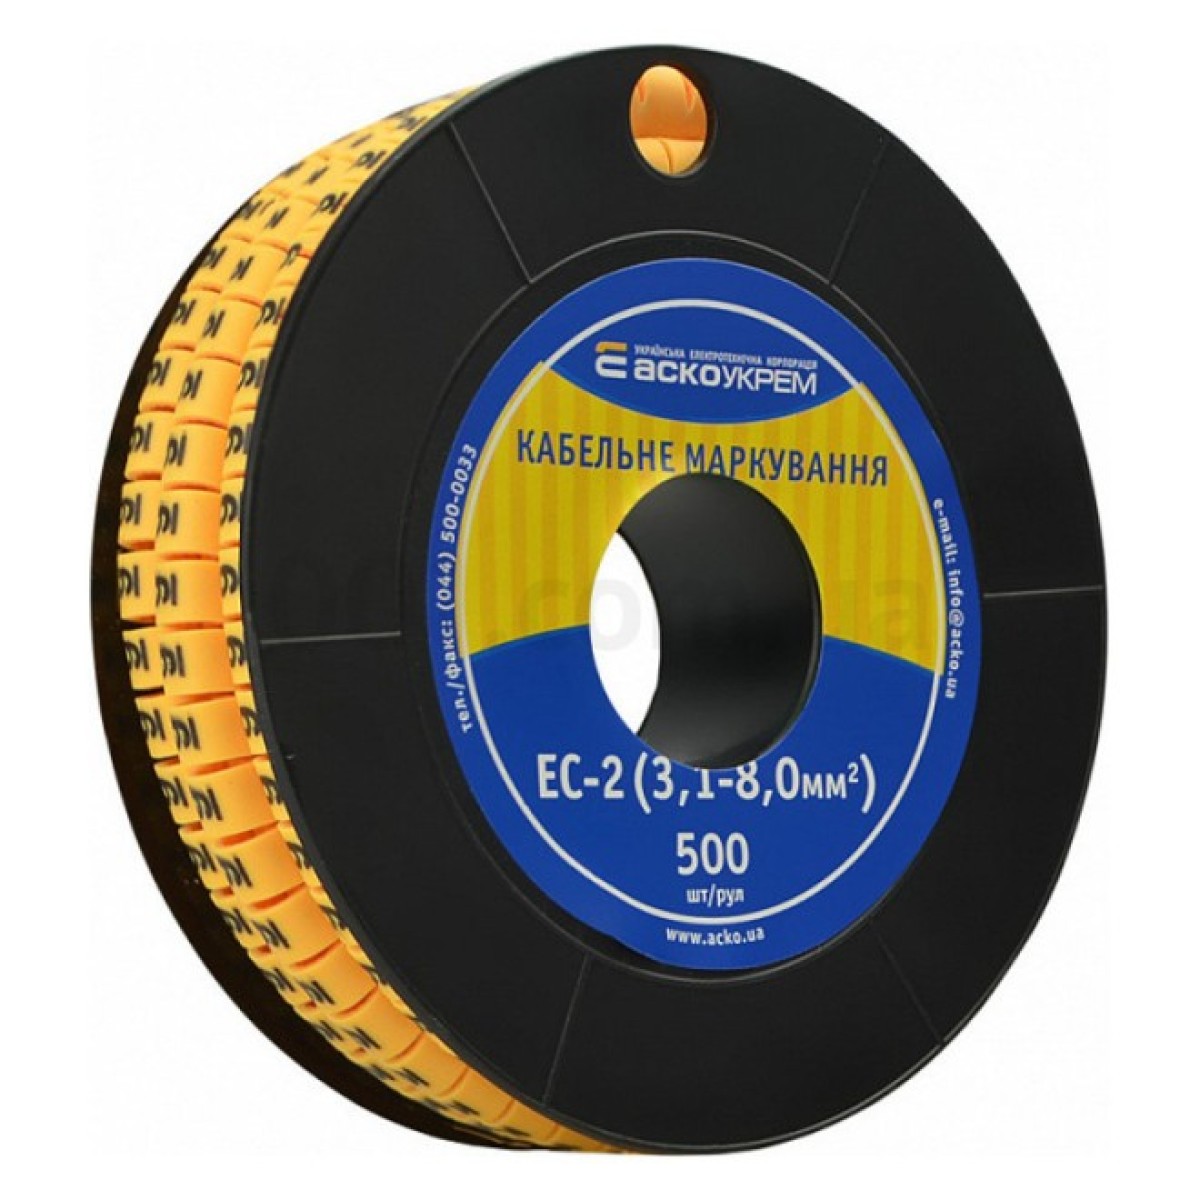 Маркировка EC-2 для кабеля 3,1-8,0 мм² символ «9» (рулон 500 шт.), АСКО-УКРЕМ 256_256.jpg